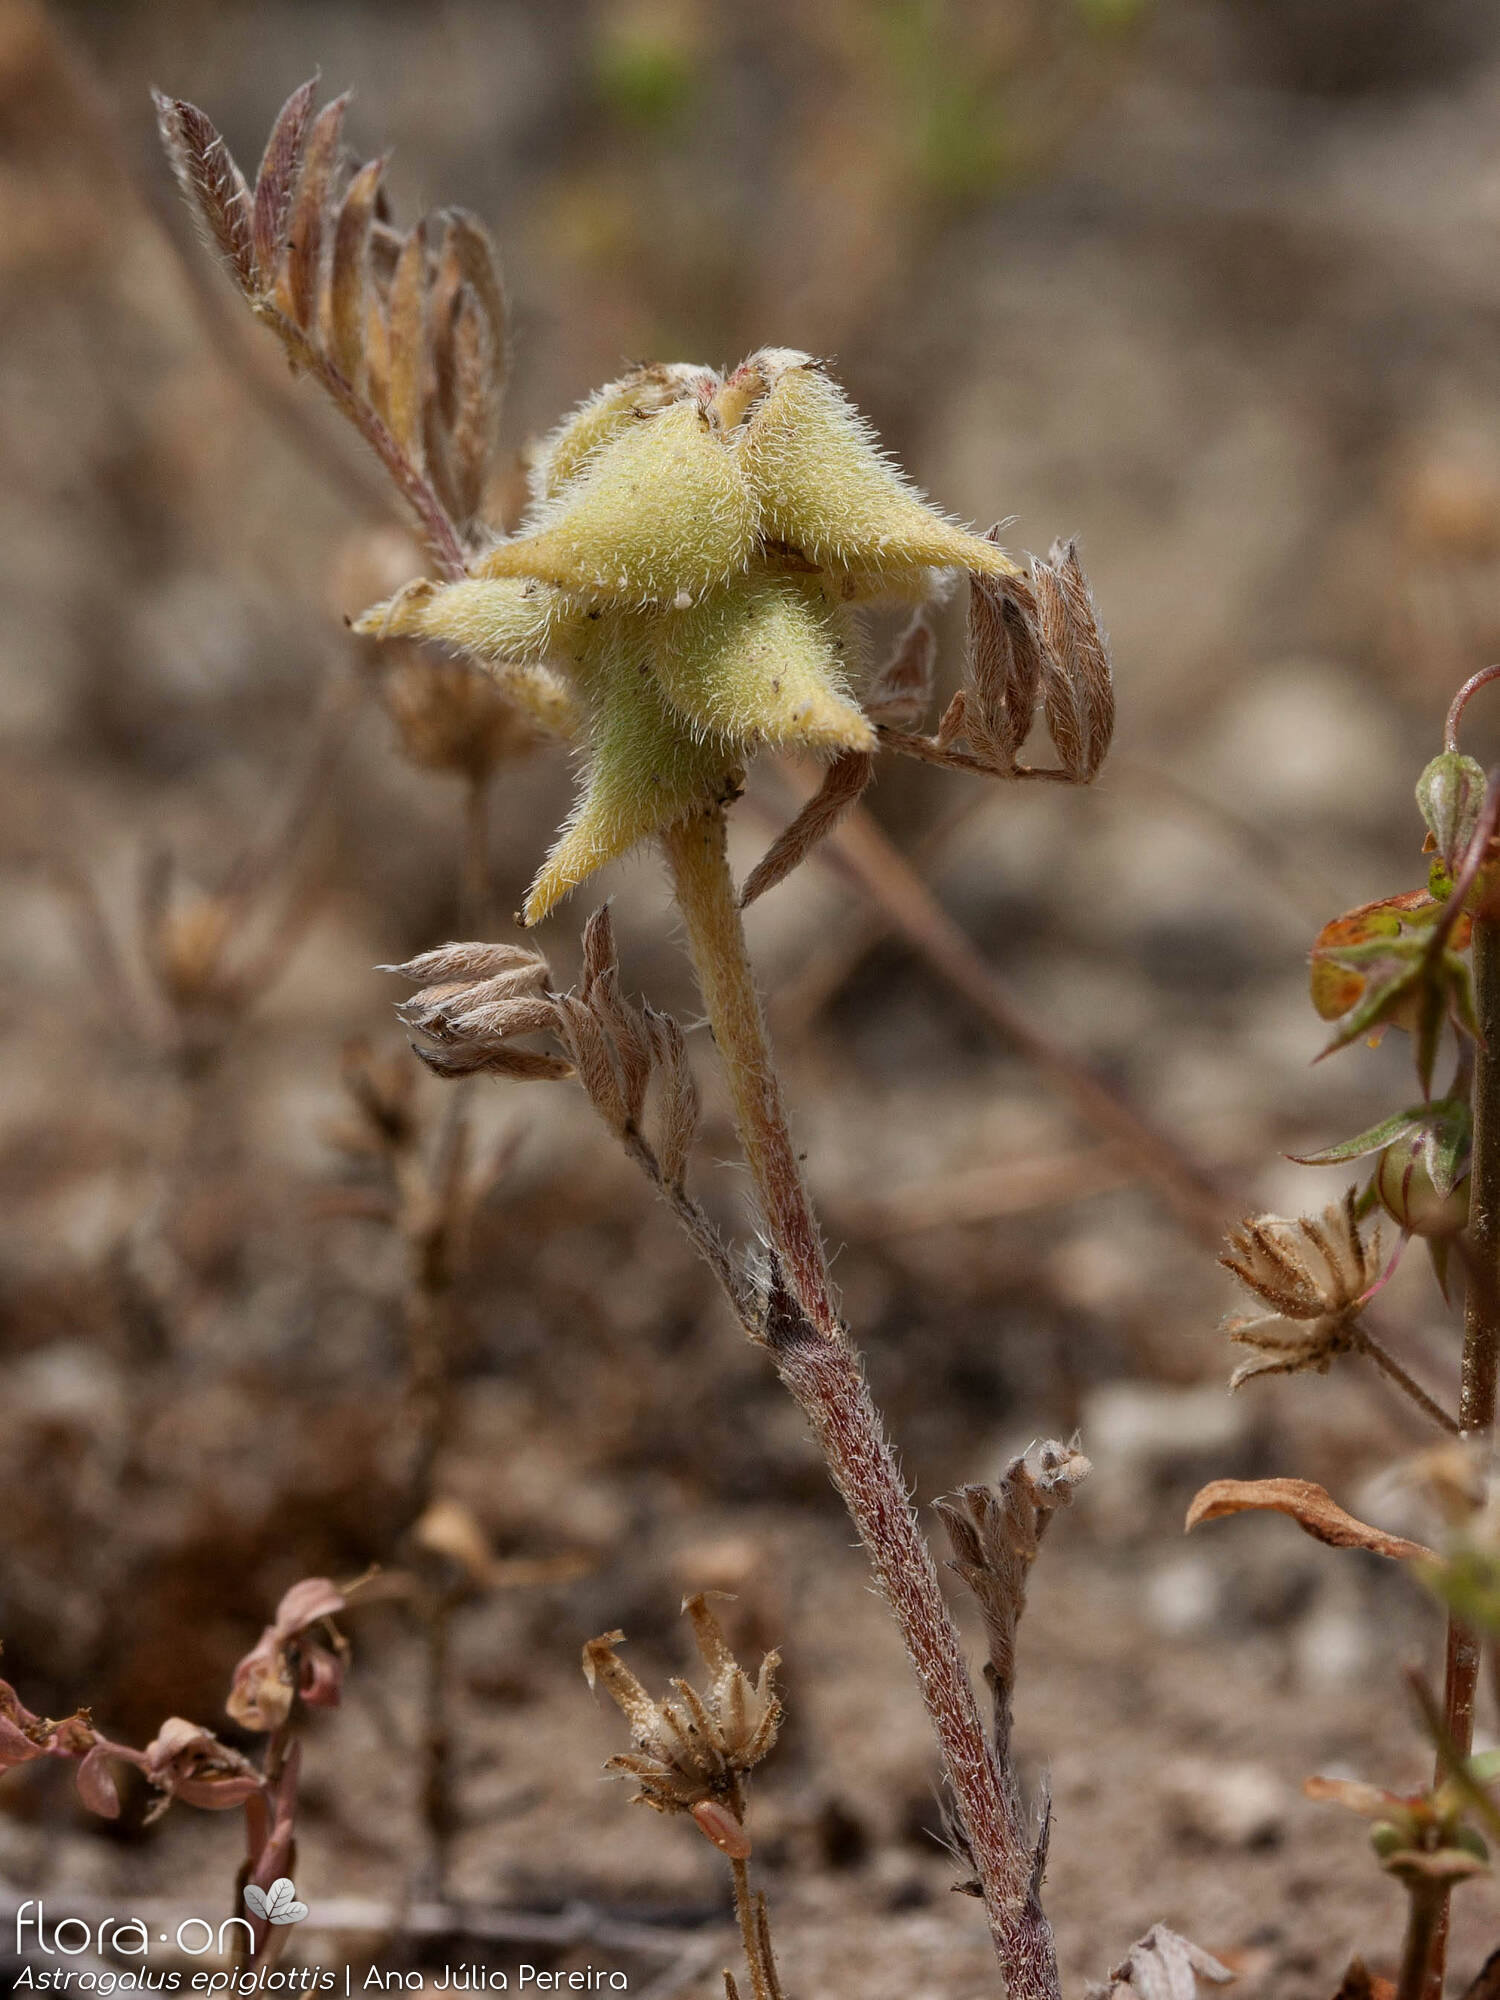 Astragalus epiglottis - Fruto | Ana Júlia Pereira; CC BY-NC 4.0